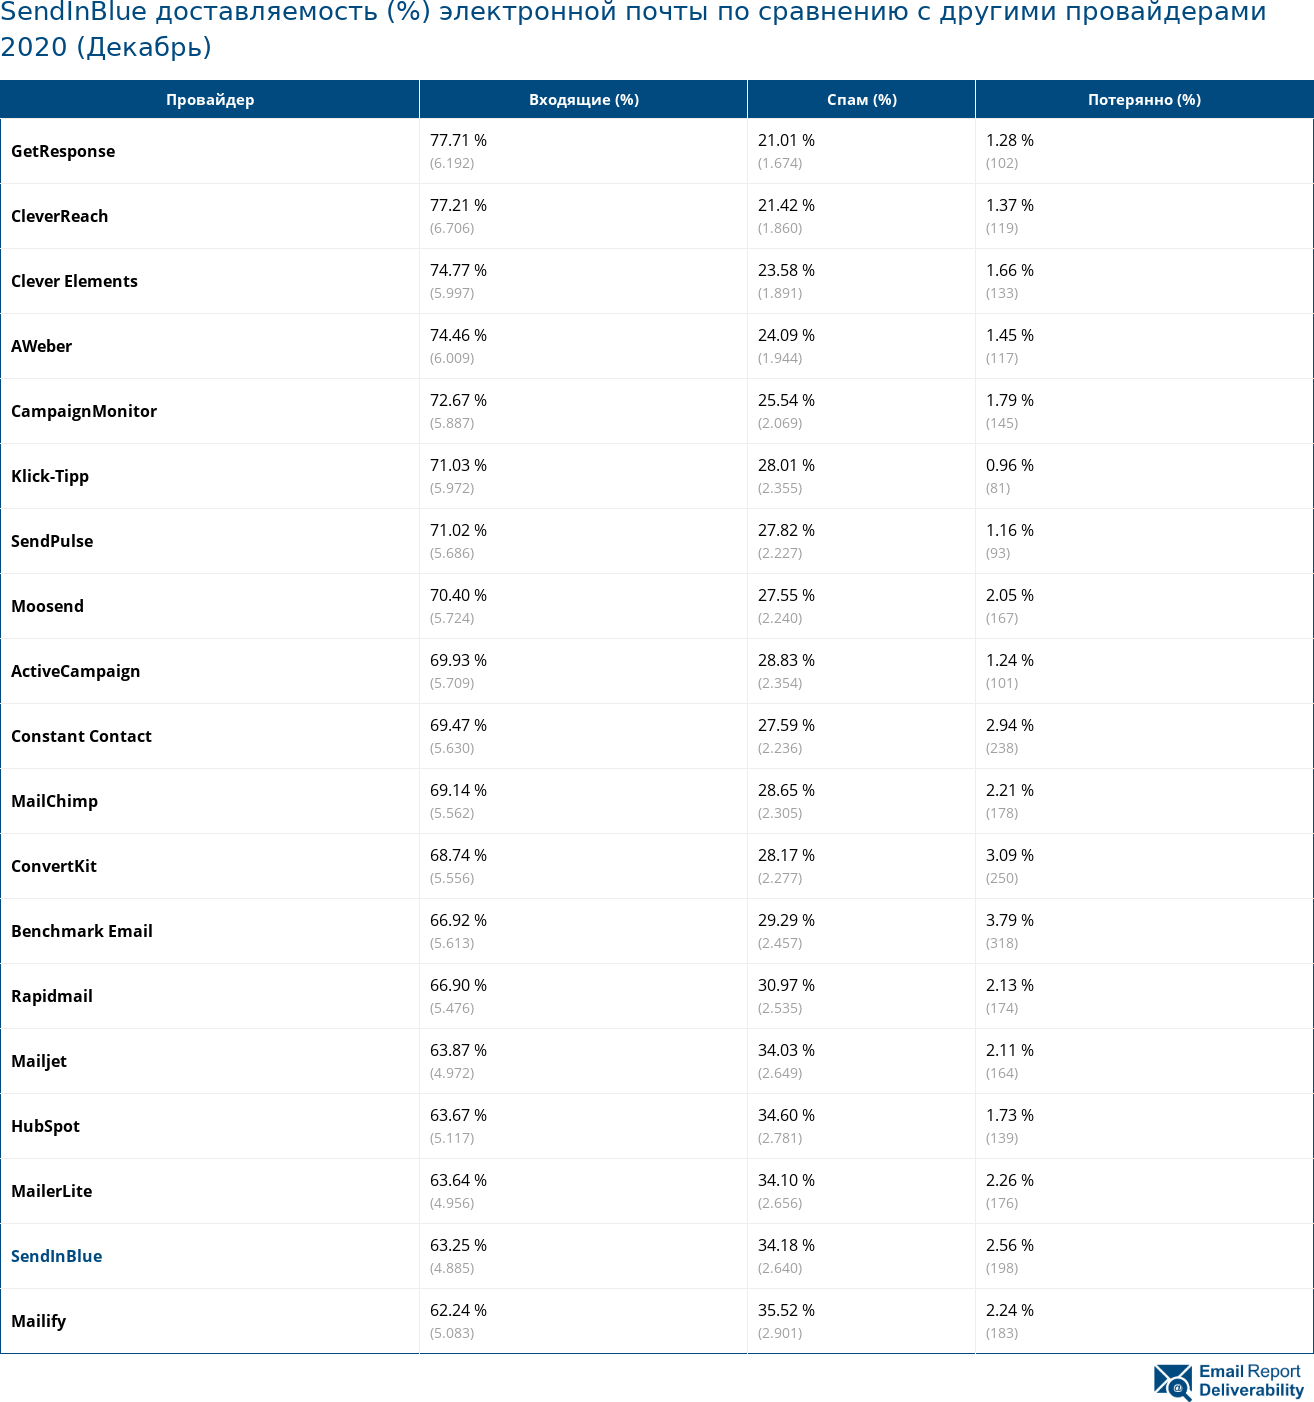 SendInBlue доставляемость (%) электронной почты по сравнению с другими провайдерами 2020 (Декабрь)